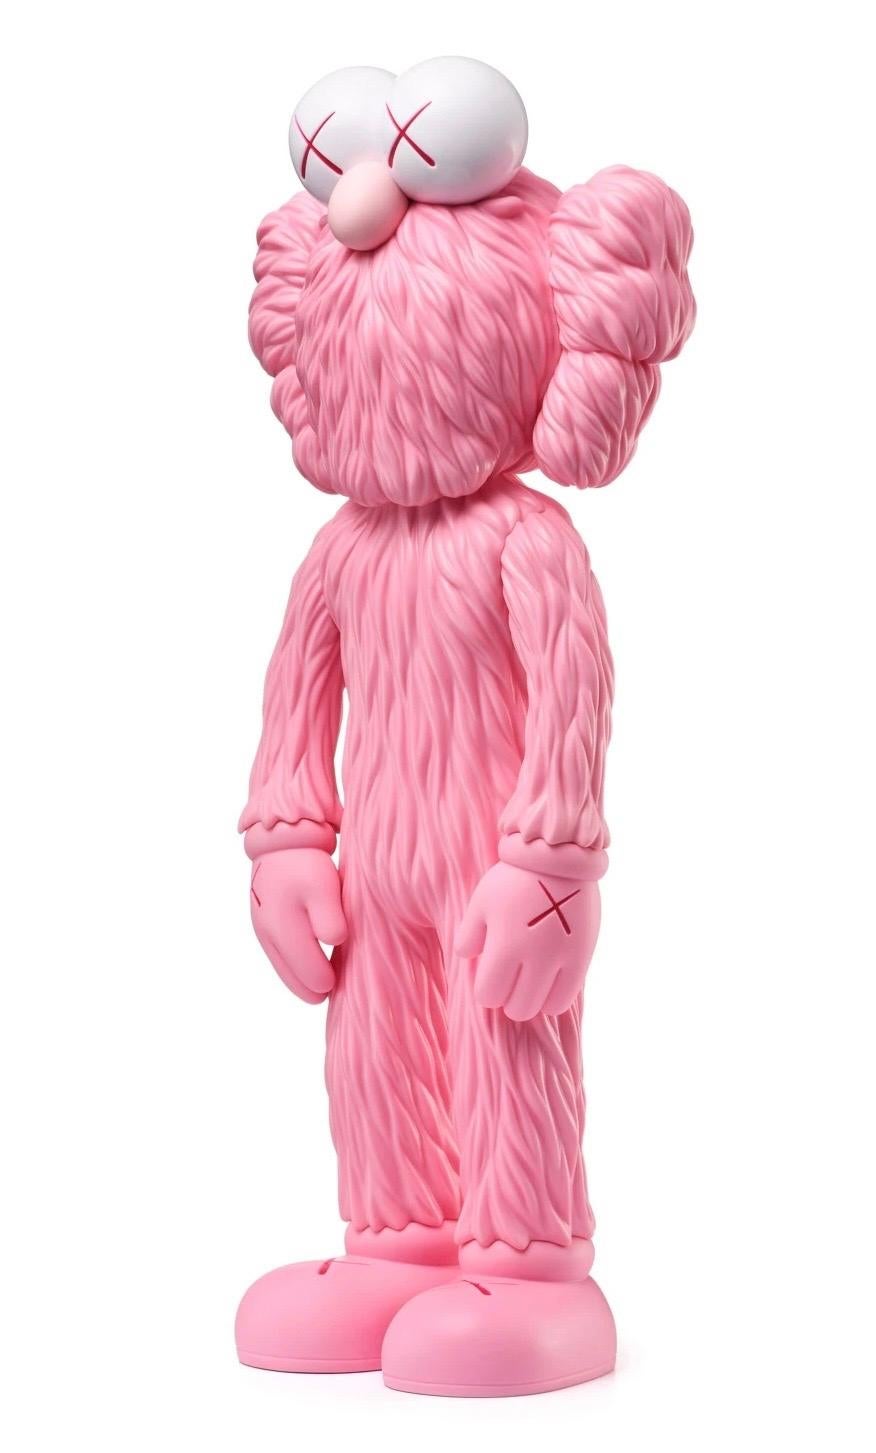 Rare KAWS BFF Pink neu, ungeöffnet in der Originalverpackung. 
Ein viel beachtetes Werk und eine Variation von Kaws' großformatiger BFF-Skulptur befindet sich im Stadtteil Playa Vista von Los Angeles. Sie ist komplett ausverkauft, sehr begehrt und